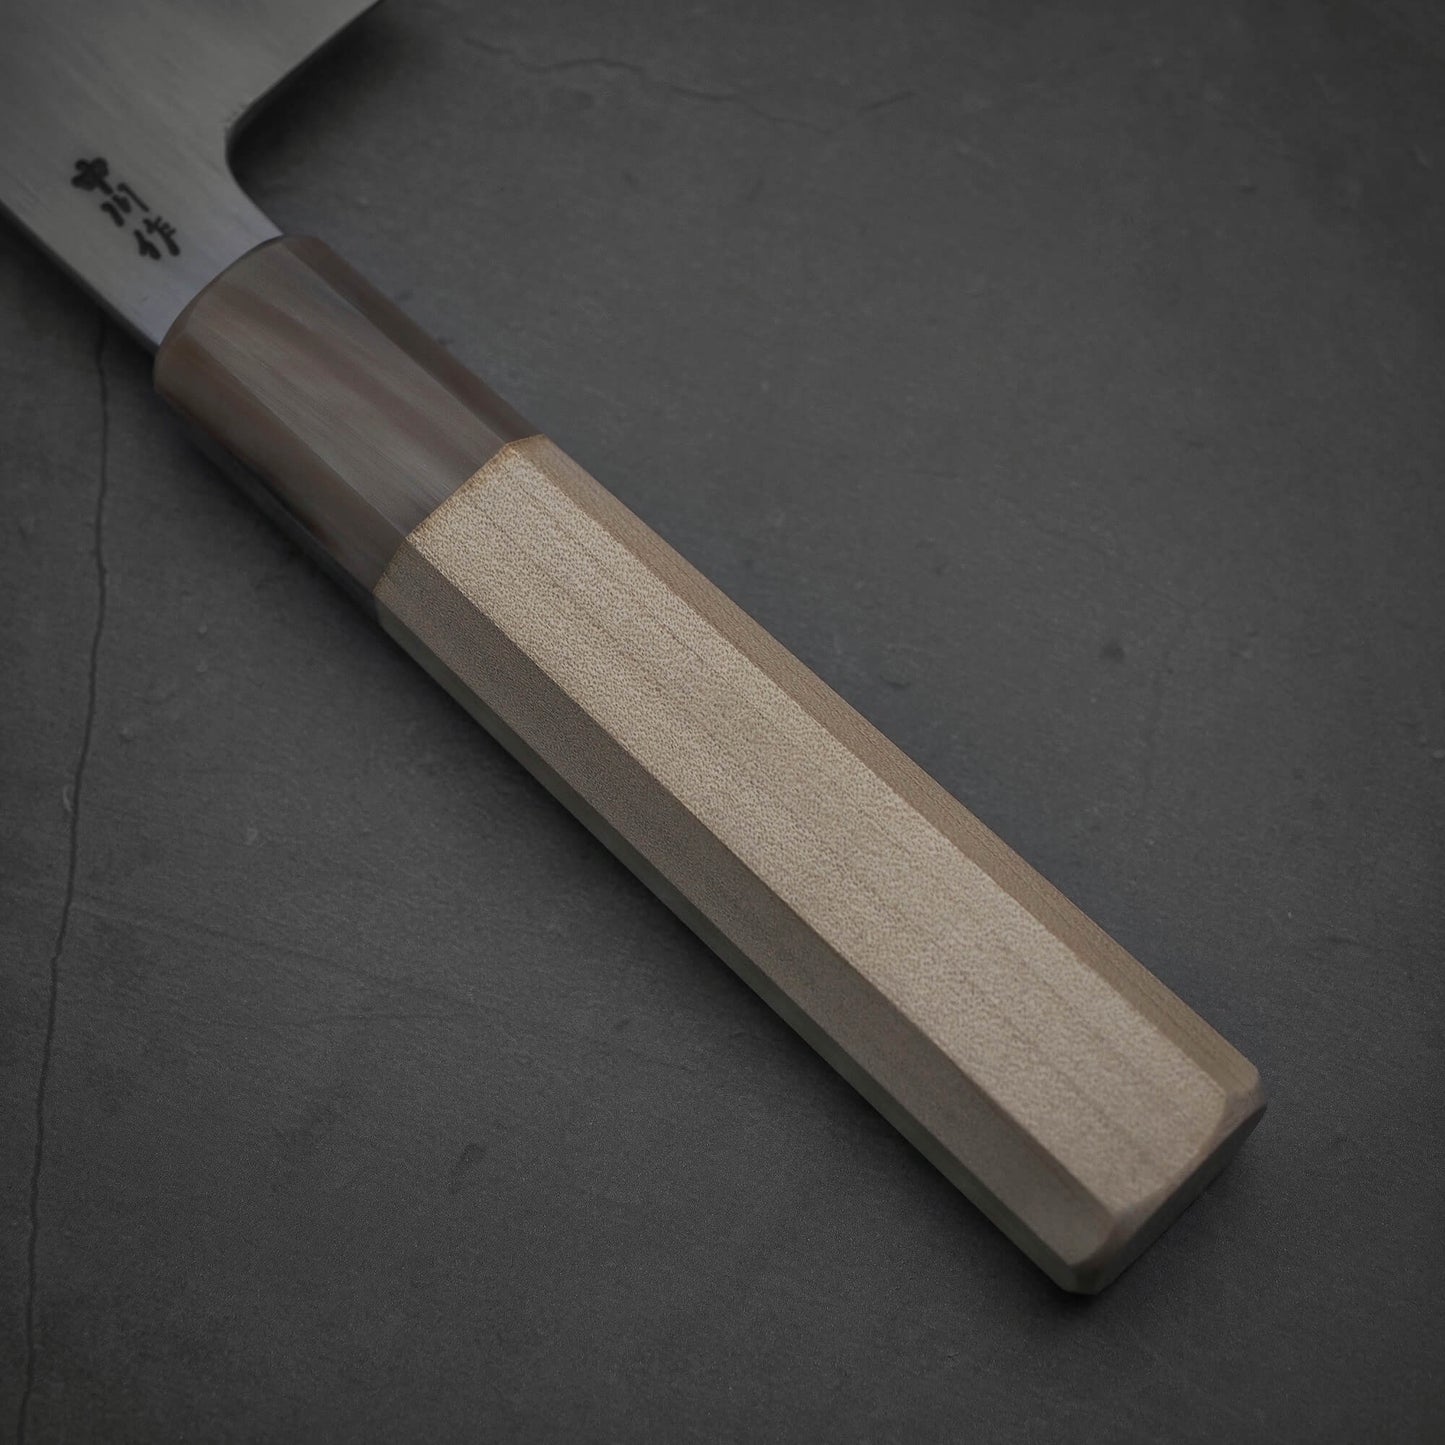 Close up view of the handle of Nakagawa aogami#2 nakiri knife 